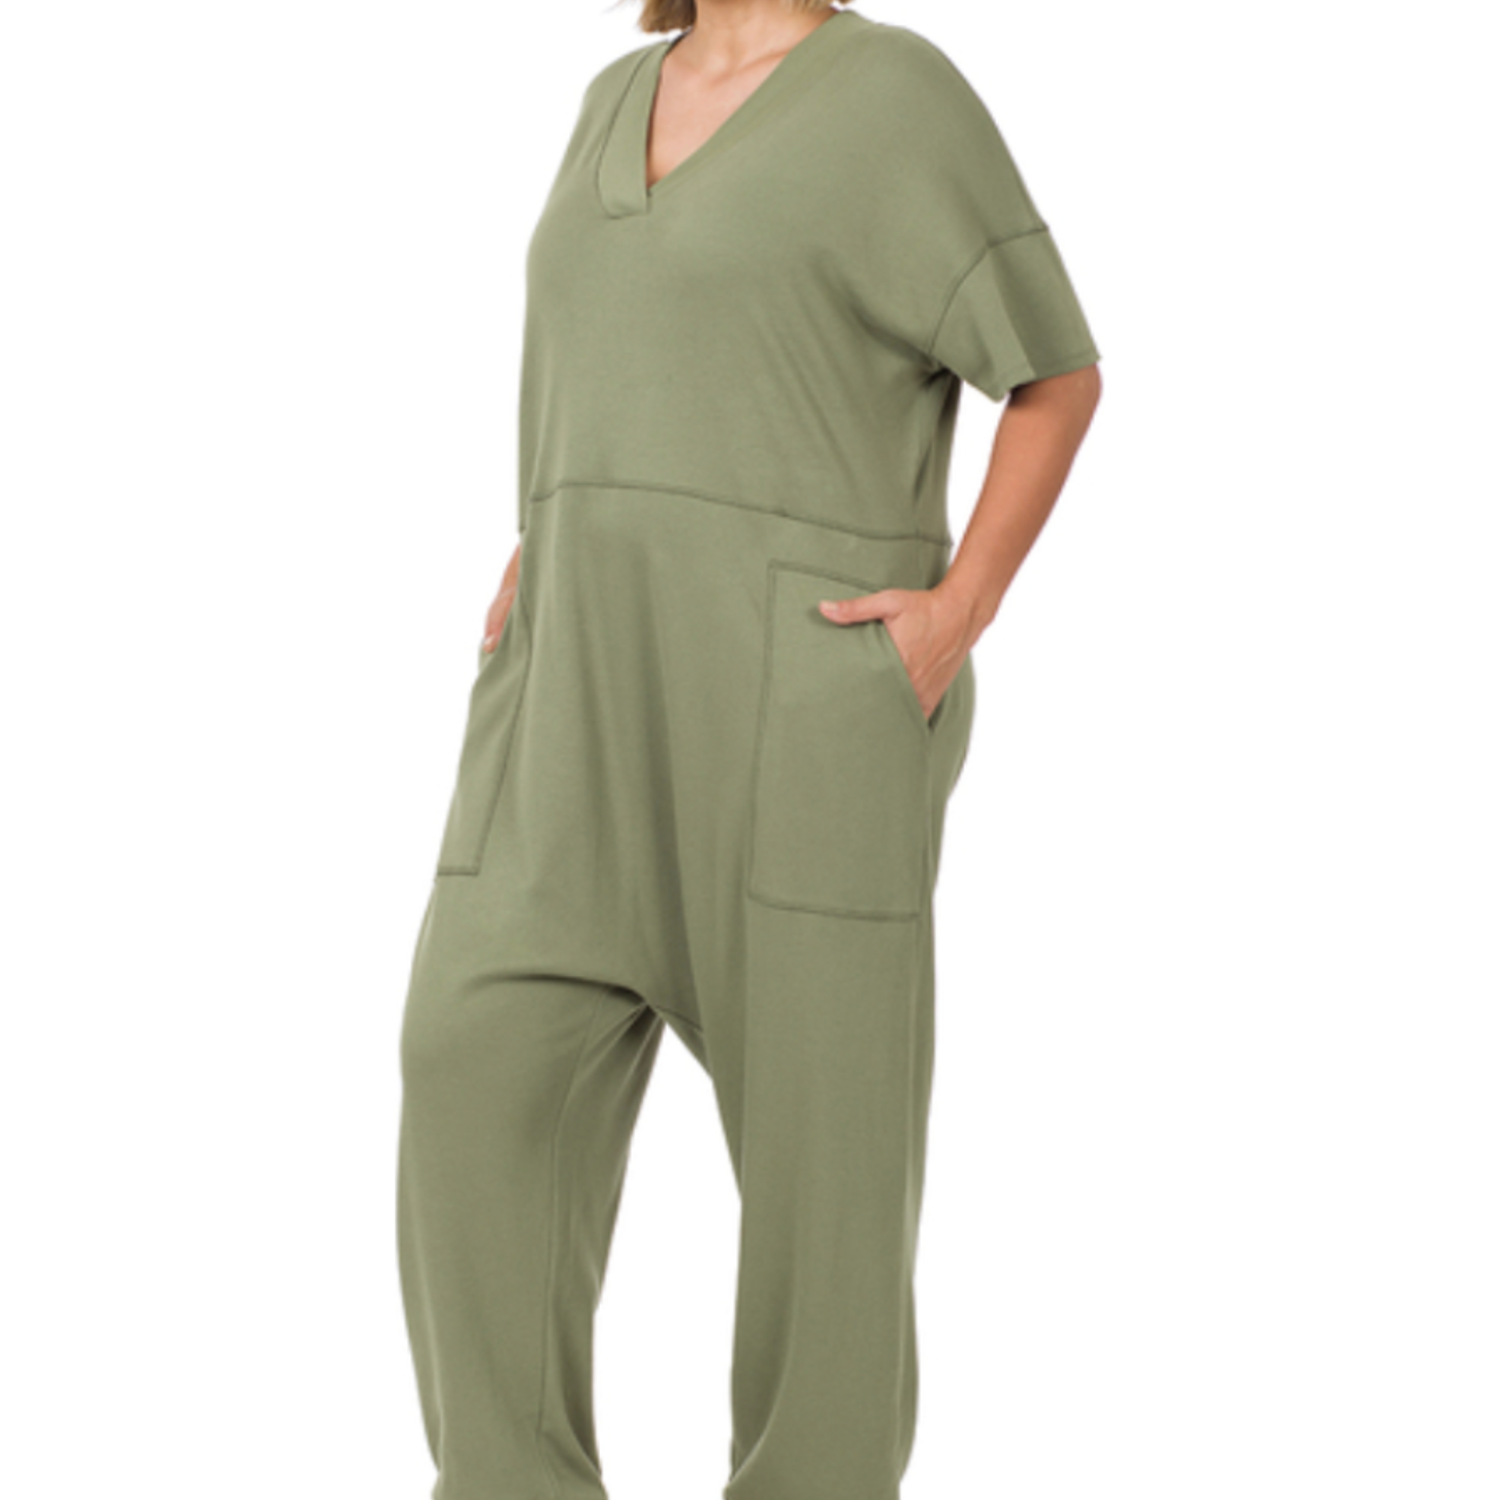 Harem Jumpsuit - Olive Green - Plus Size - Jogger - Pockets - Comfy - Soft